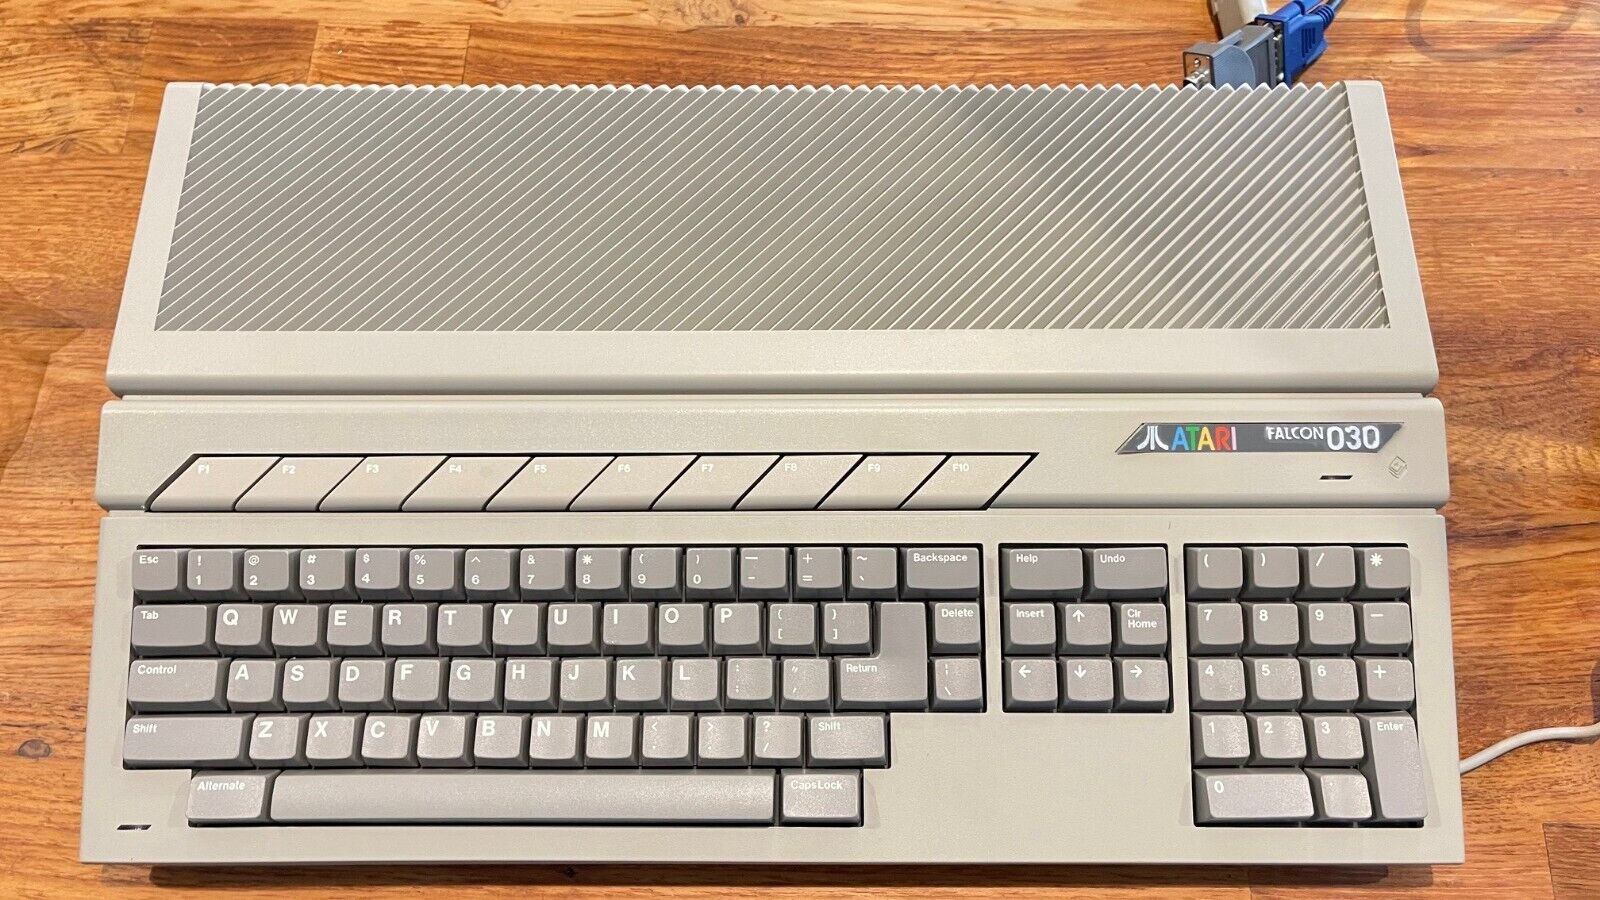 Atari Falcon 030 Computer-